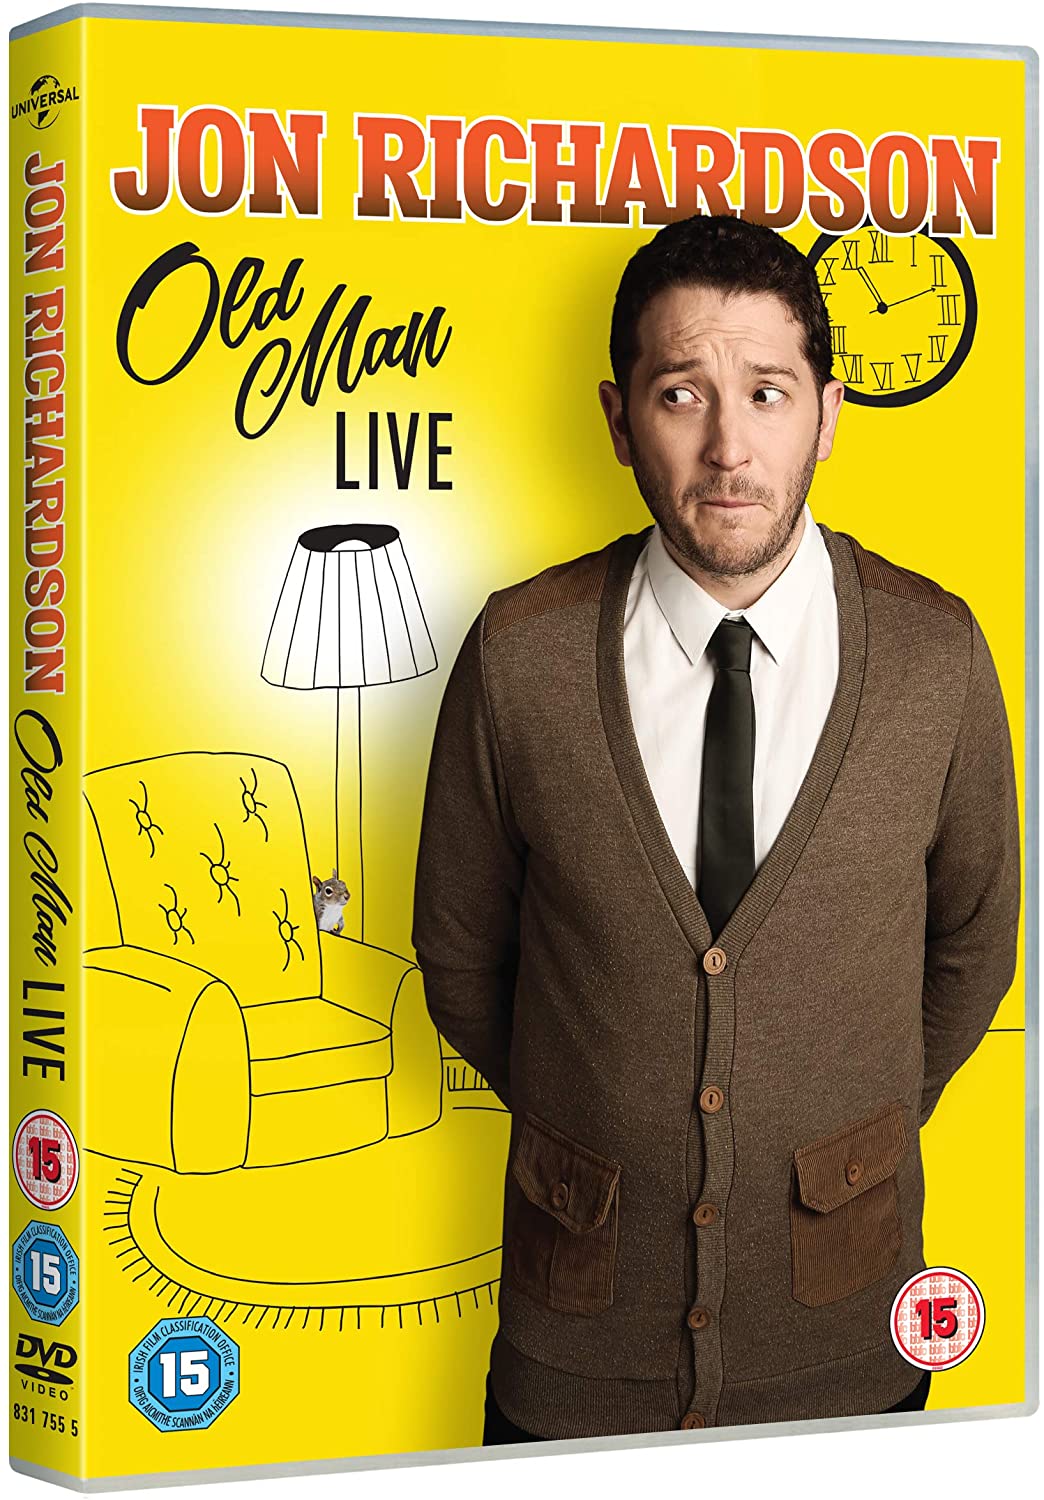 Jon Richardson: Old Man [Live] (DVD)